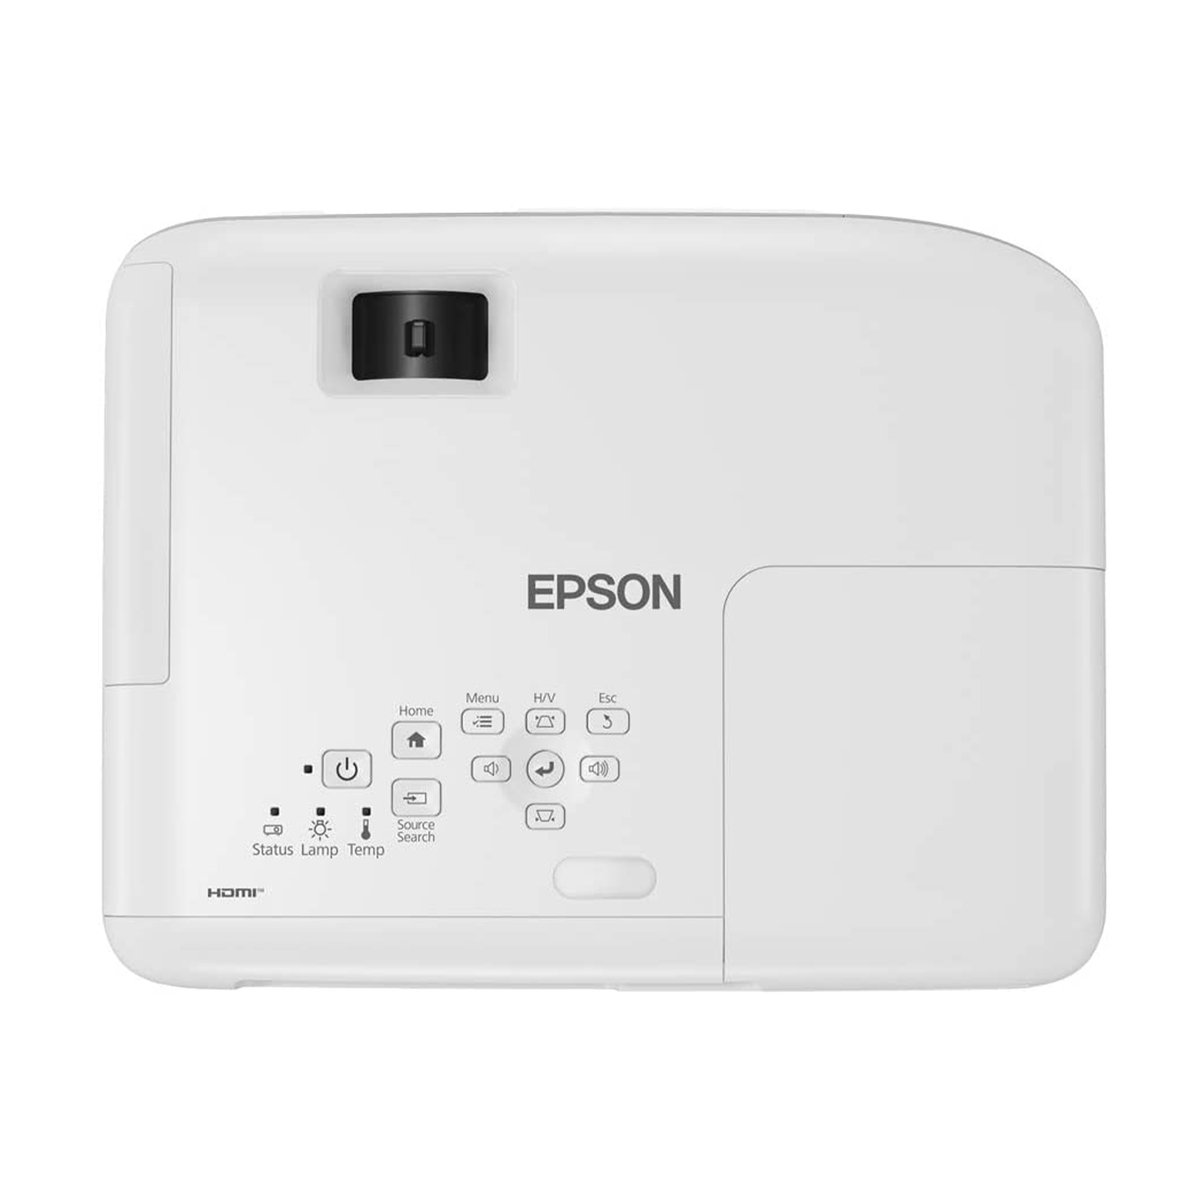 جهاز عرض (بروجكتور) إبسون EB-E01  أبيض --3300 لومن -- محازاه سهلة -- عمر يصل 18 عاماً - جهاز عرض XGA  محمول